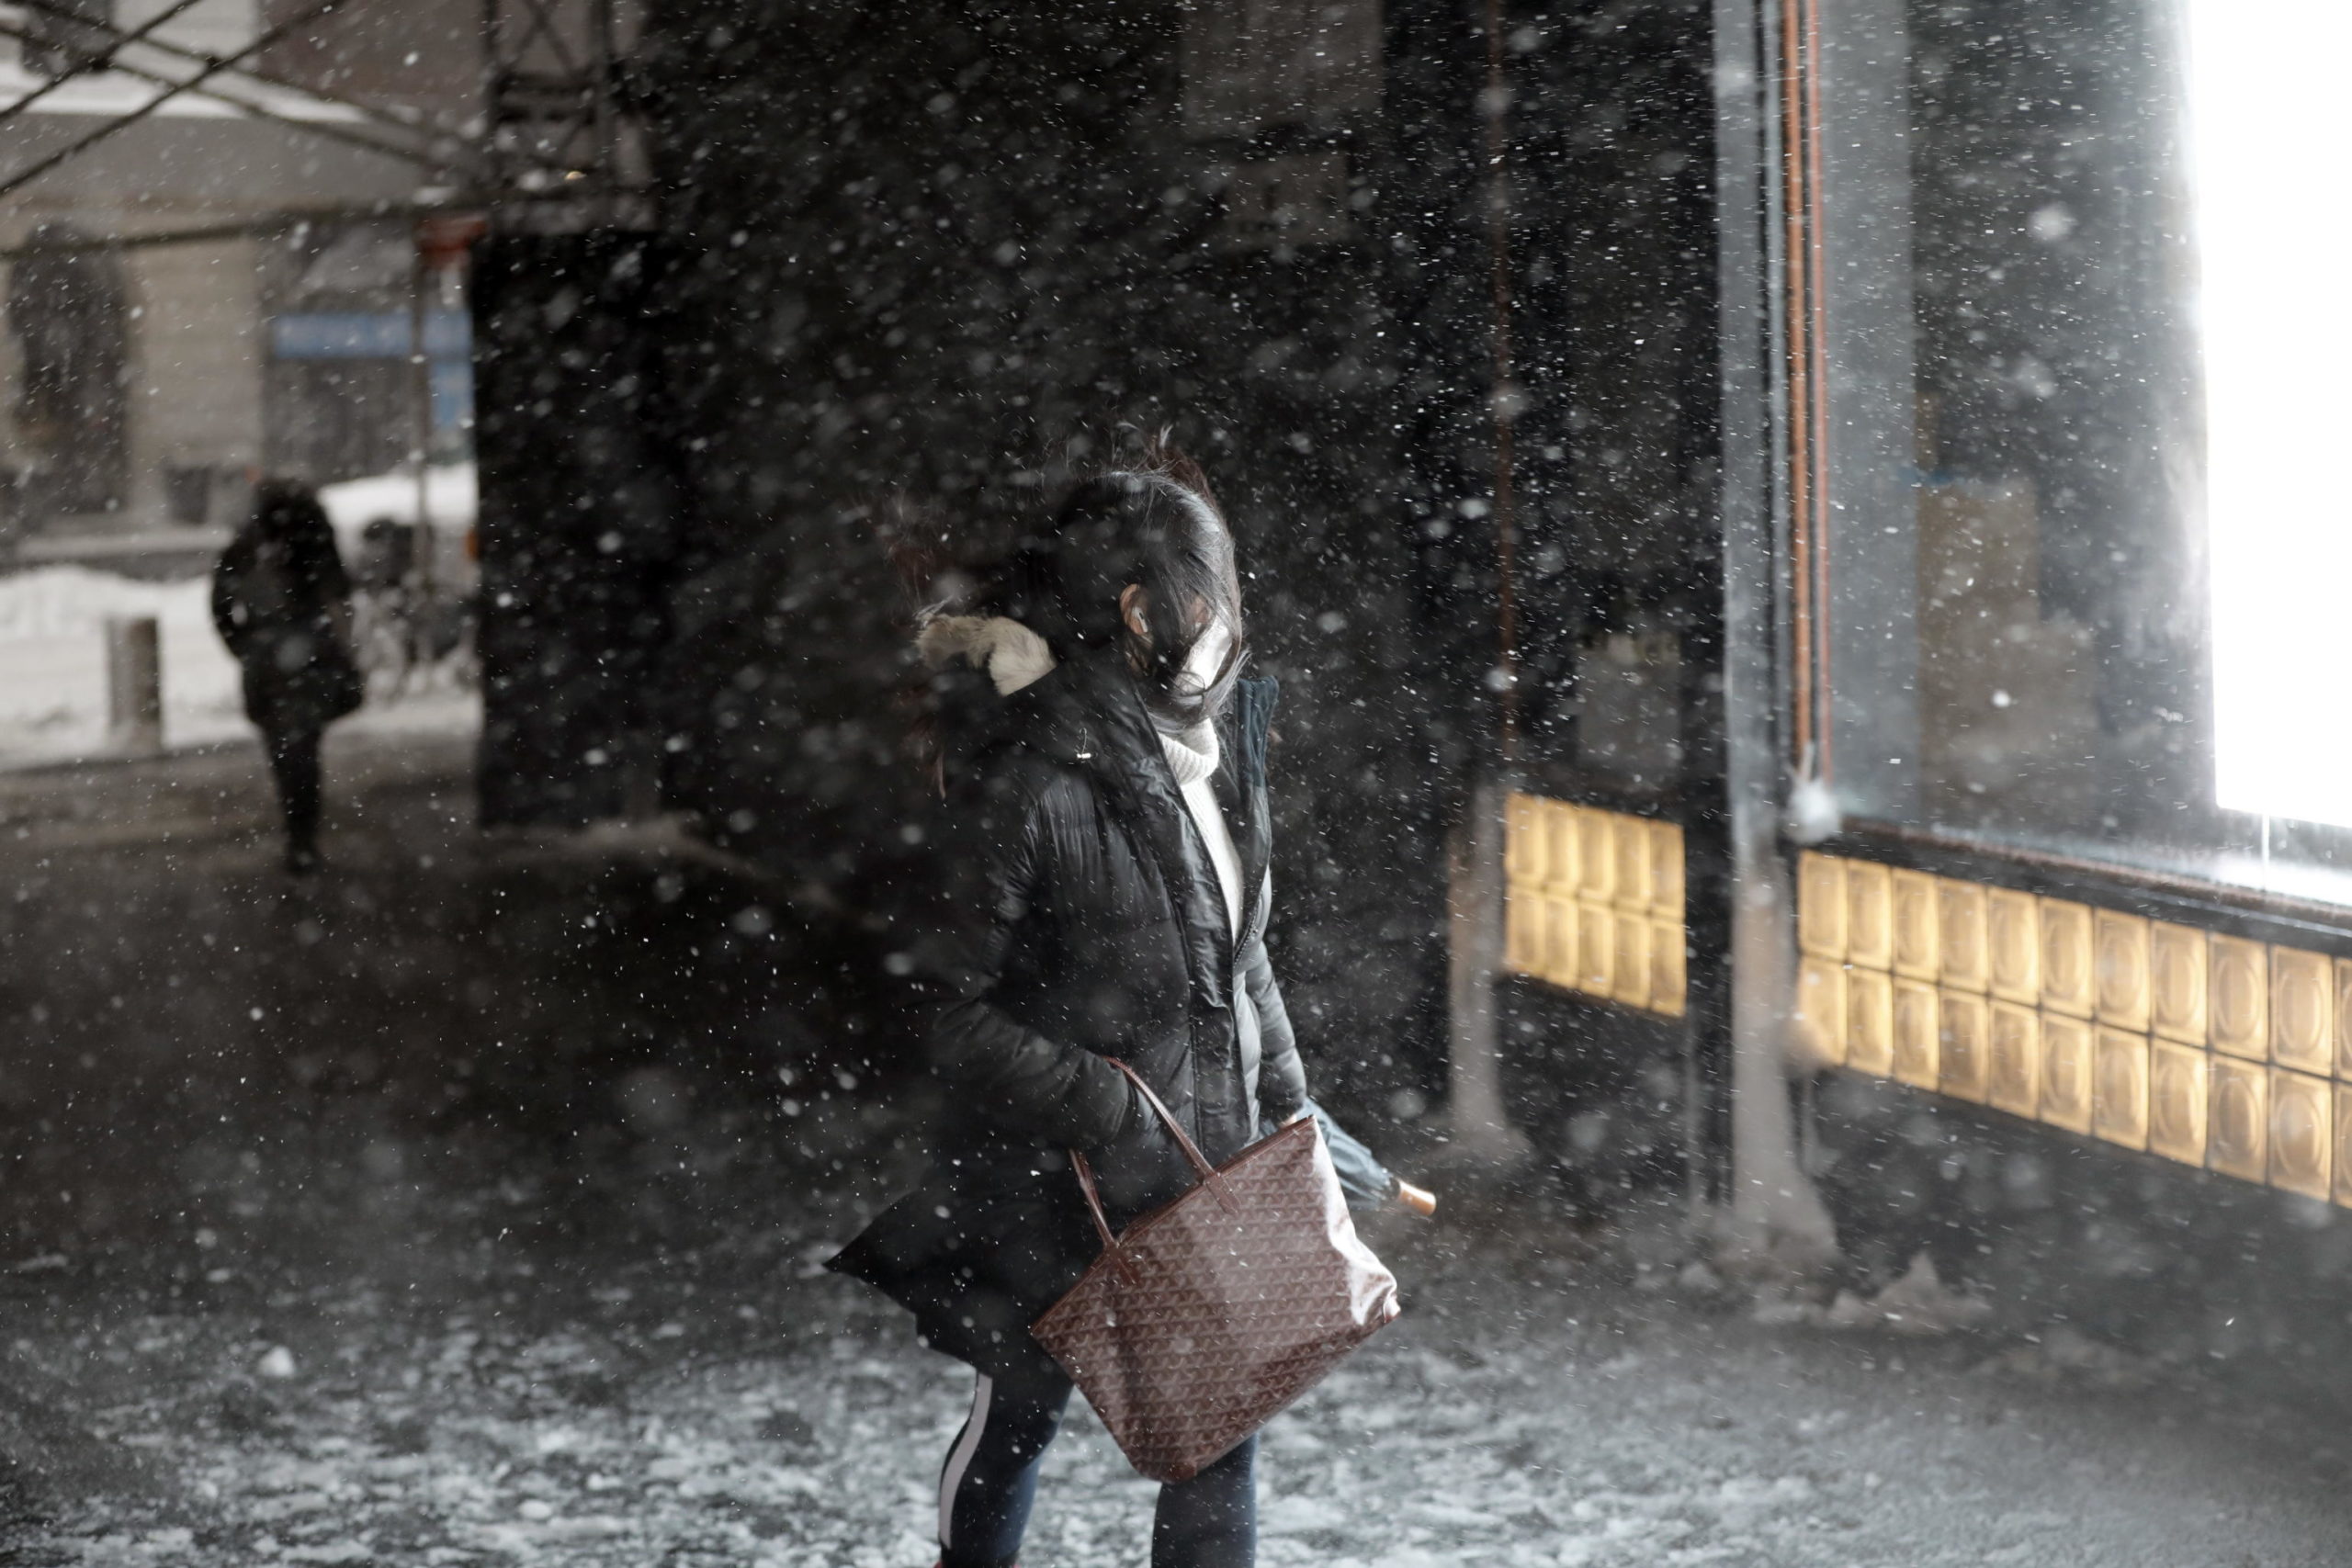 Una ragazza tra la neve che continua a cadere